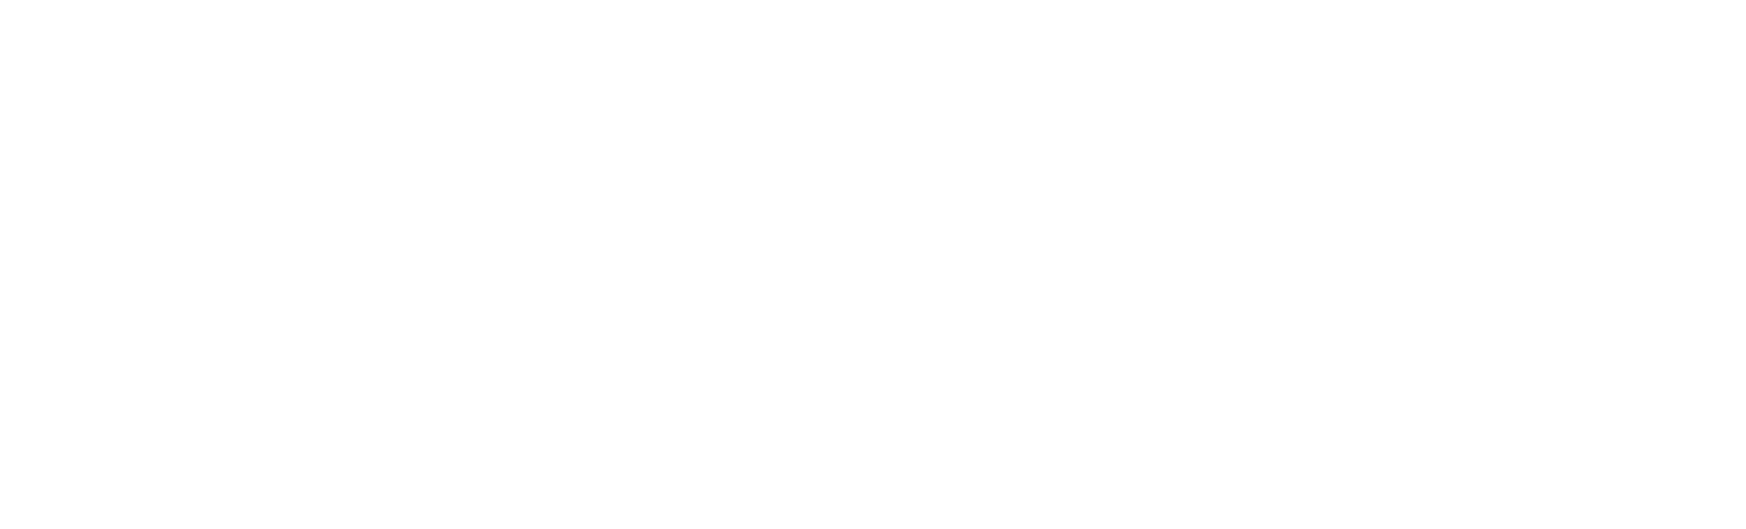 Mule ESB logo